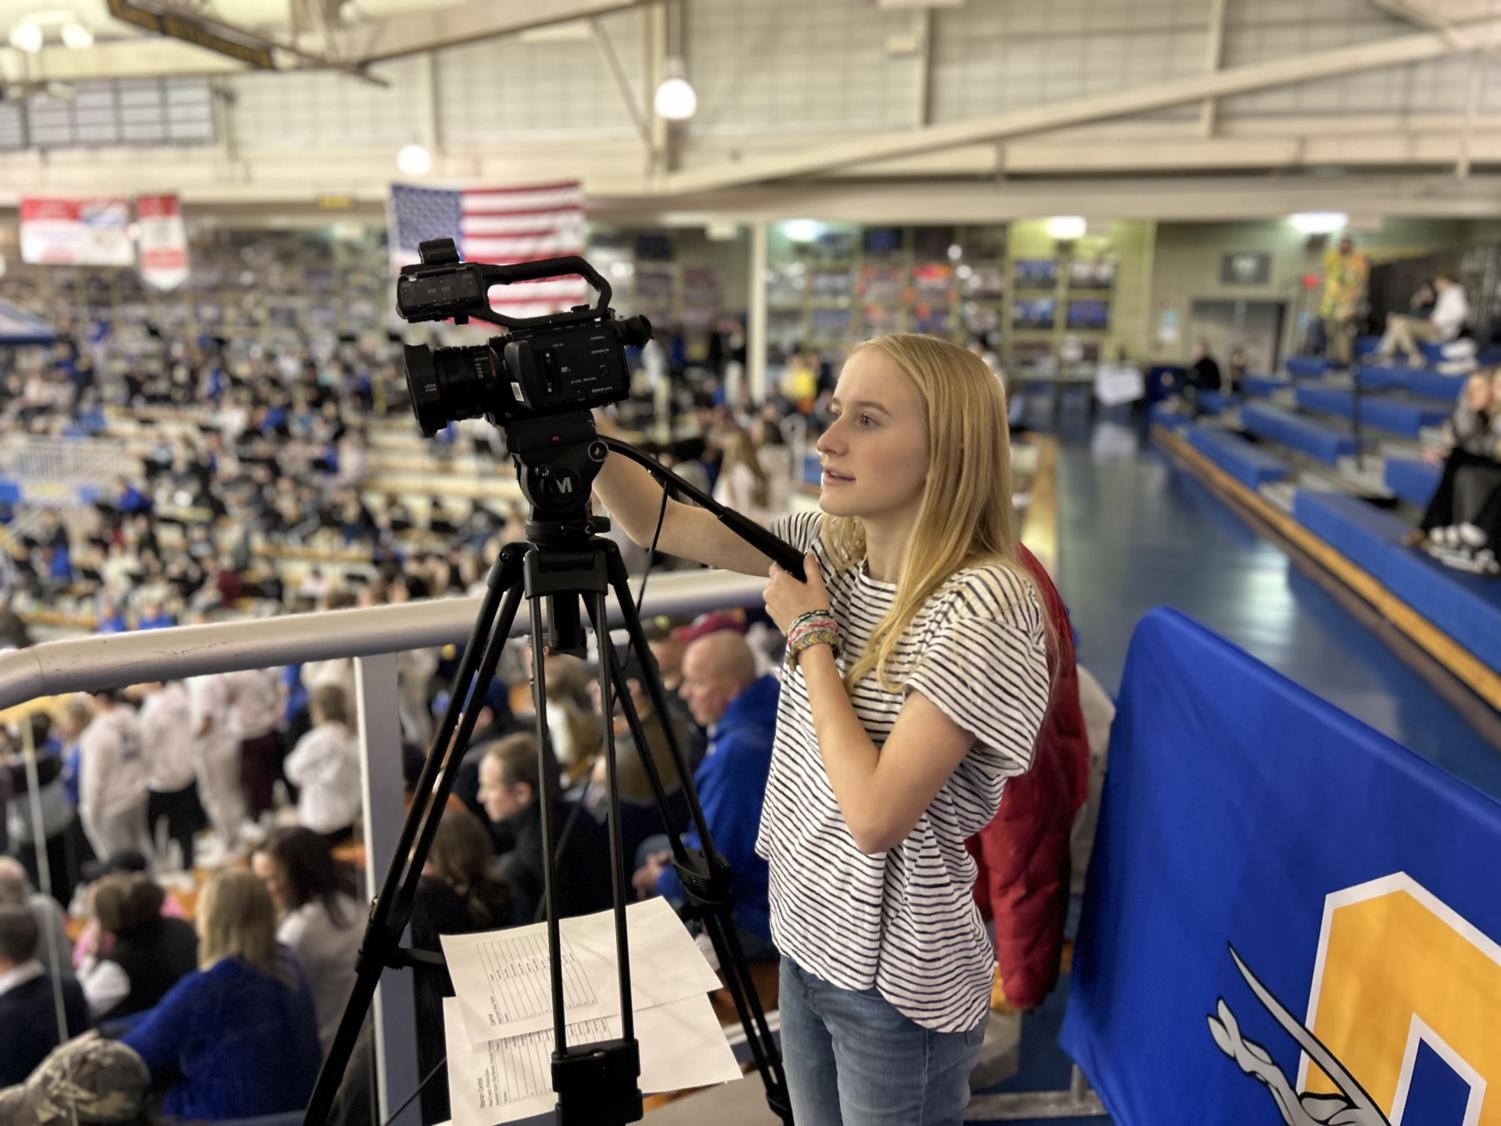 Kate operating a camera at a basketball game